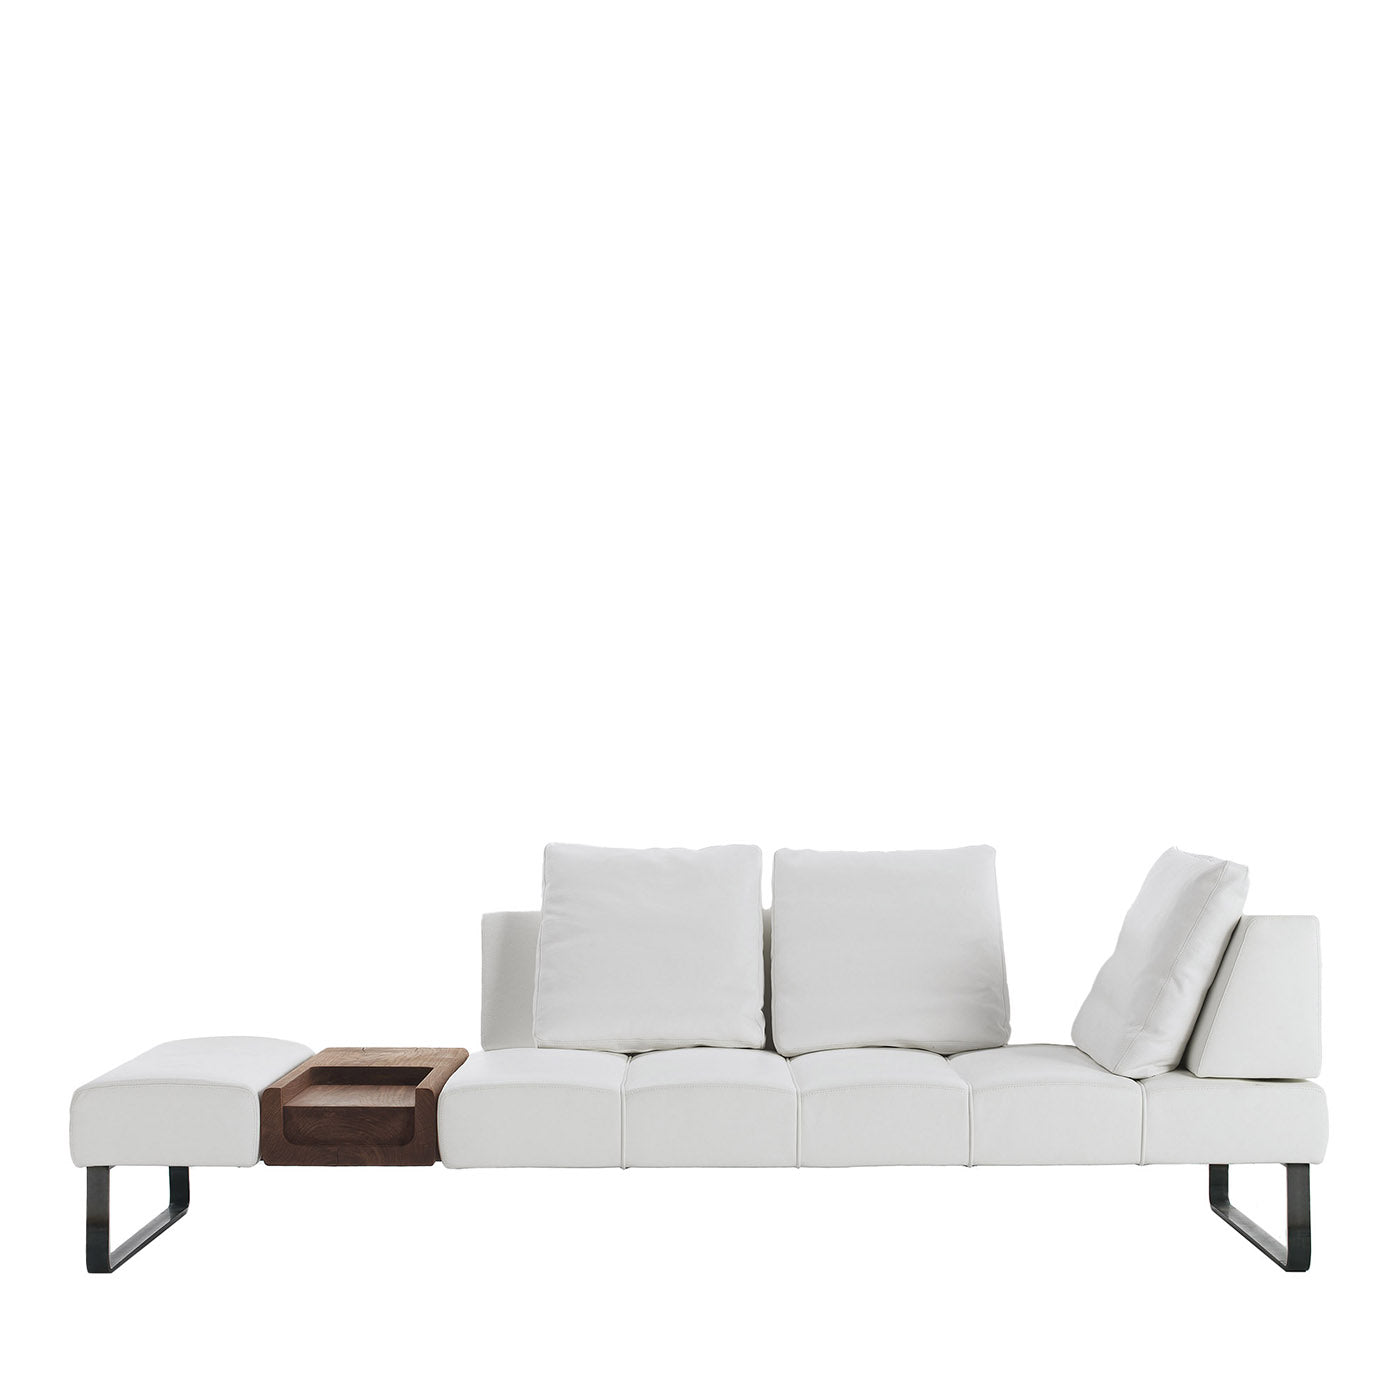 Patmos Asymmetrical White Sofa by Terry Dwan - Main view